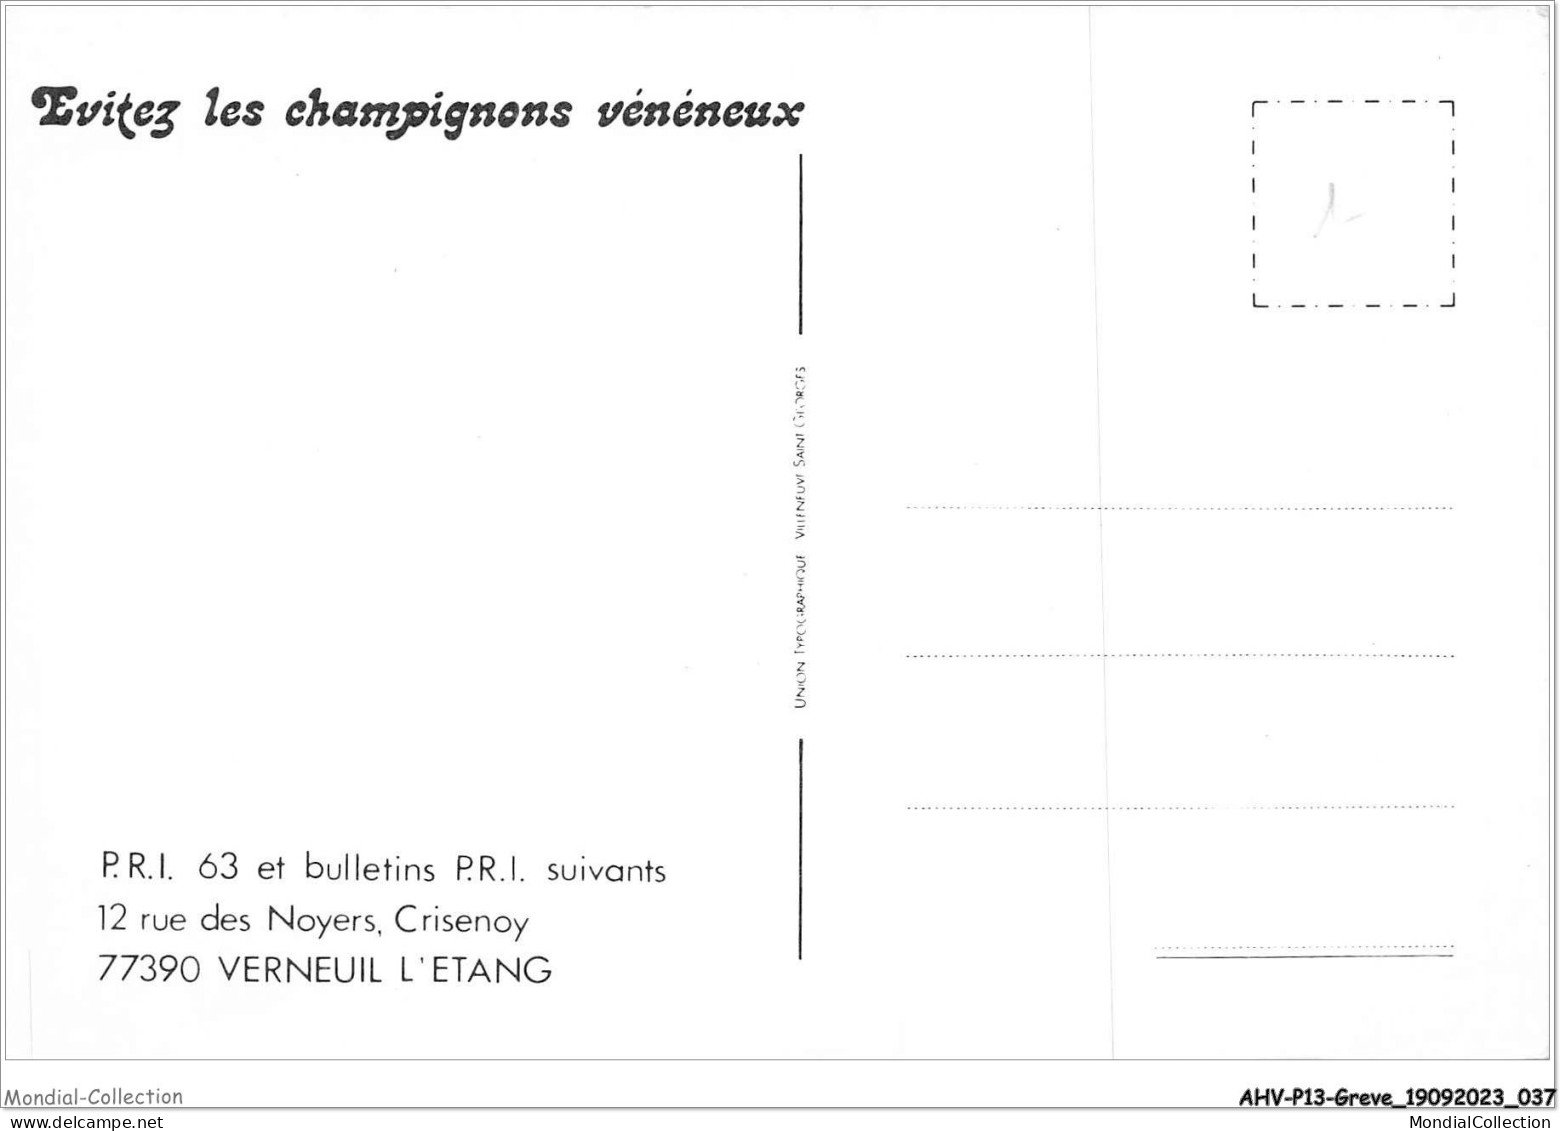 AHVP13-1132 - GREVE - Evitez Les Champignons Vénéneux  - Streiks